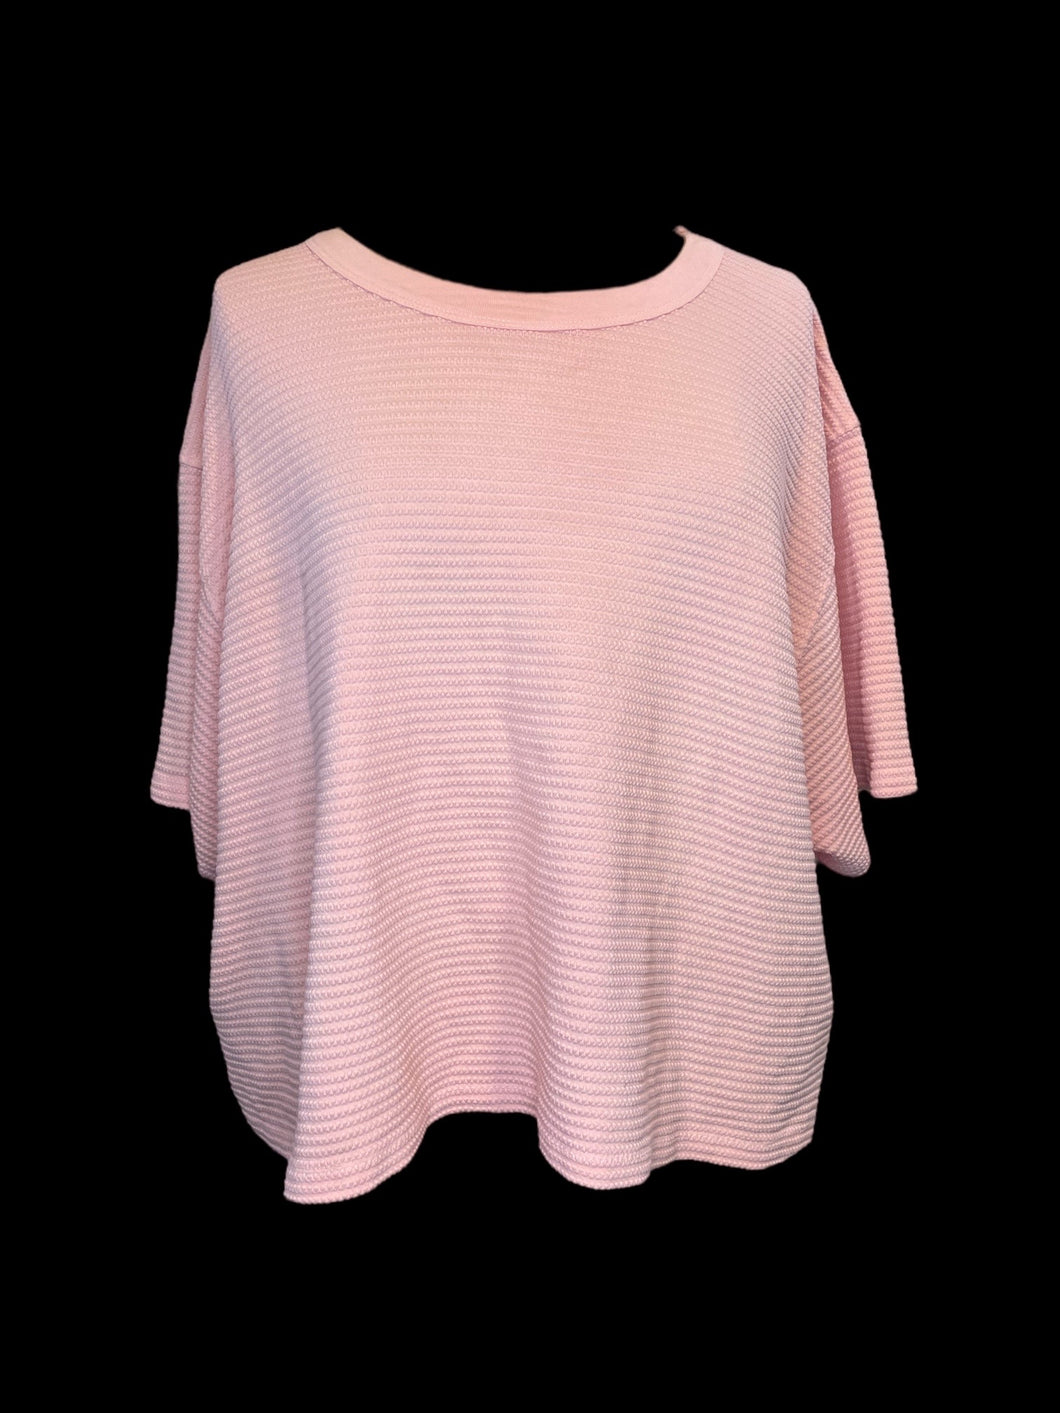 4X Pink textured cotton fabric short sleeve round neckline crop top